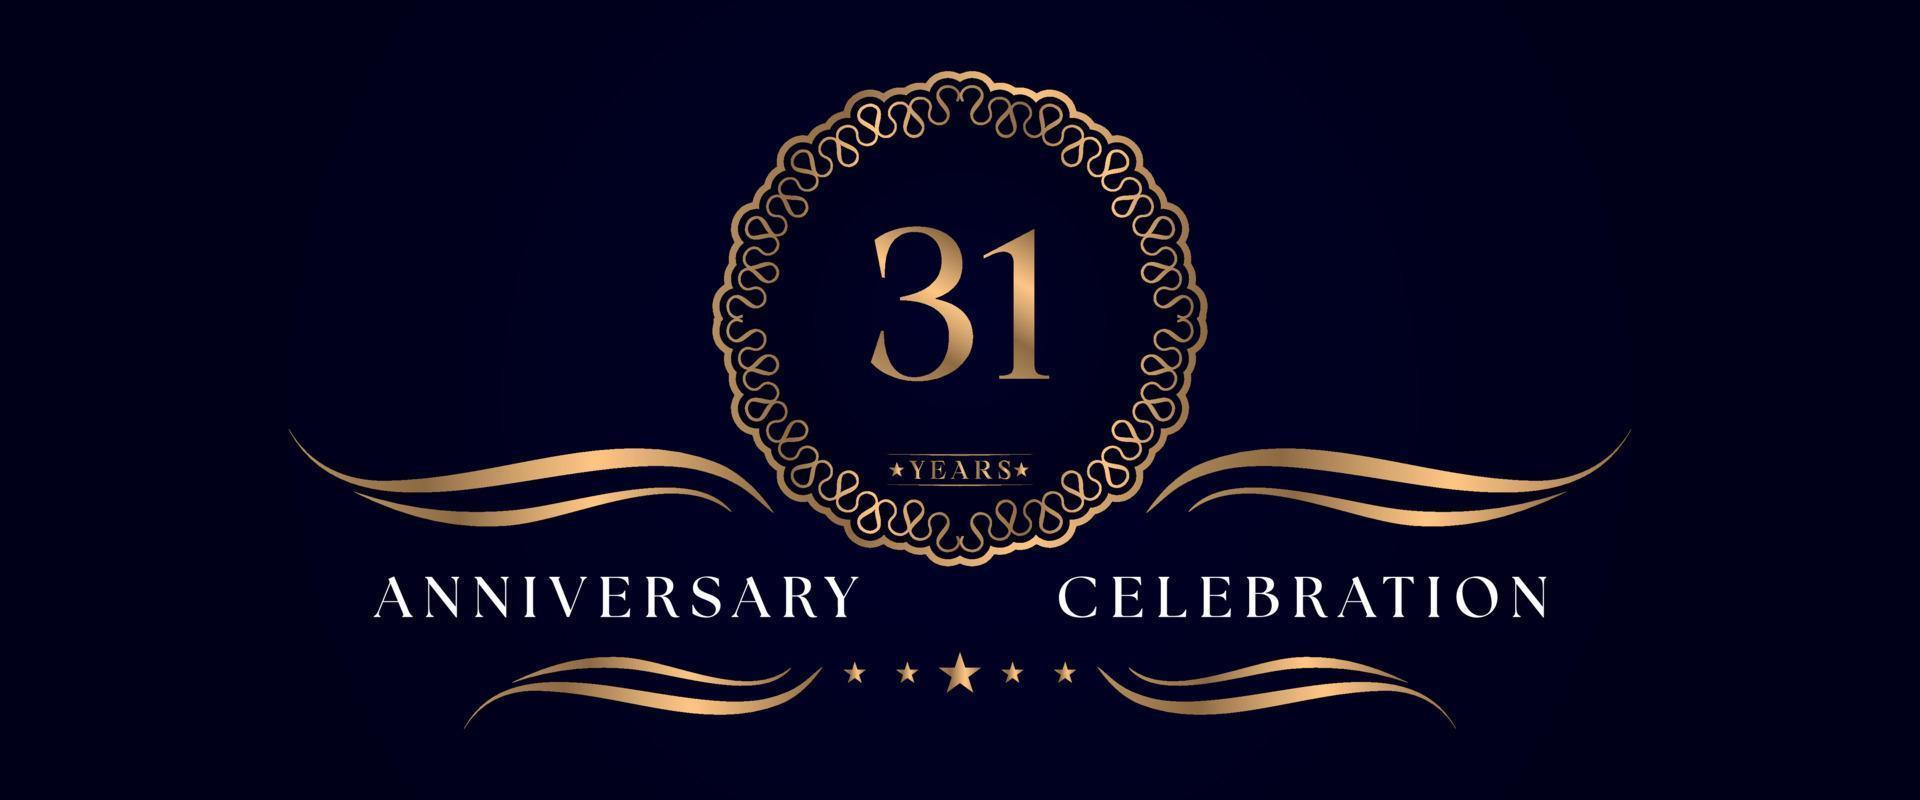 Celebrazione dell'anniversario di 31 anni con elegante cornice circolare isolata su sfondo blu scuro. disegno vettoriale per biglietto di auguri, festa di compleanno, matrimonio, festa evento, cerimonia. Logo dell'anniversario di 31 anni.